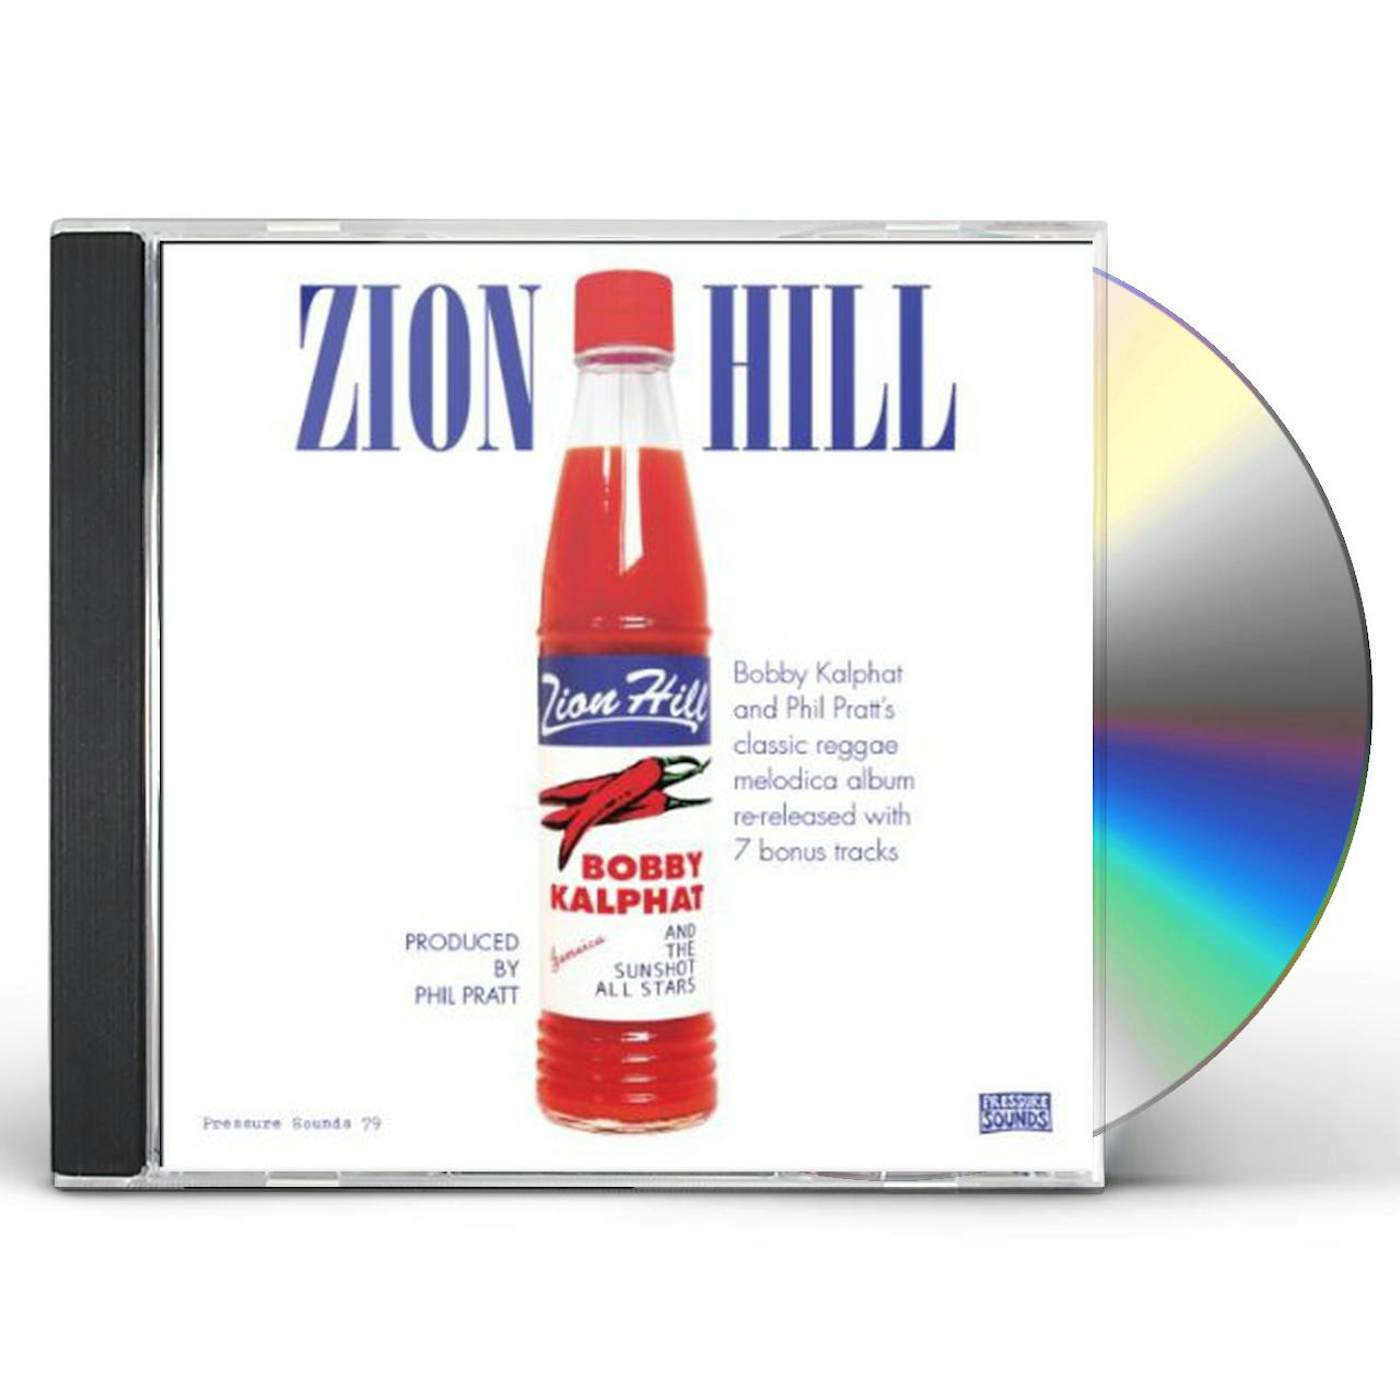 Bobby Kalphat & The Sunshot All Stars ZION HILL CD